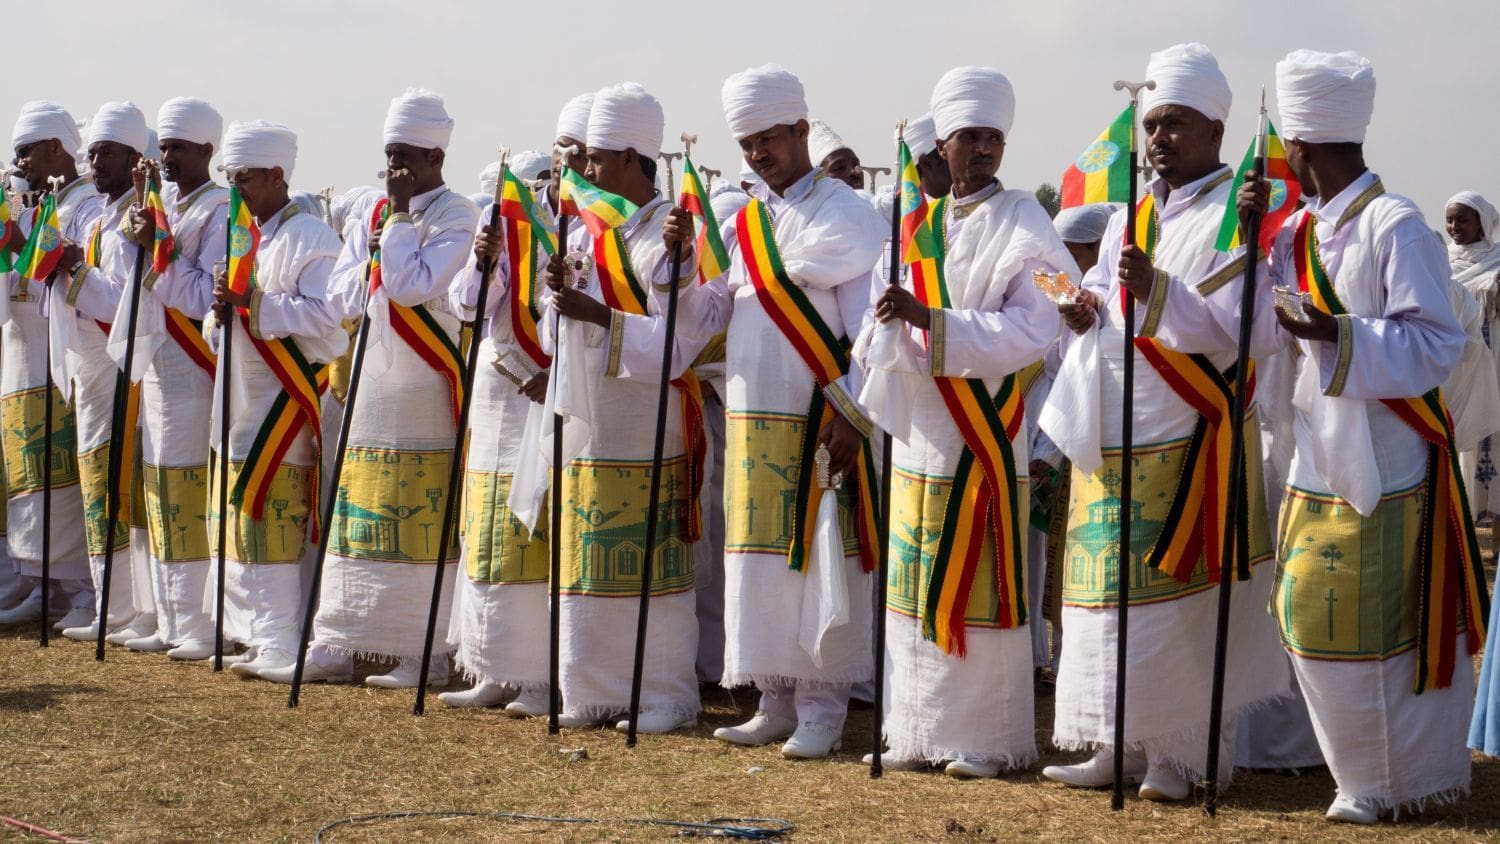 Celebrating Ethiopian Timket/Epiphany